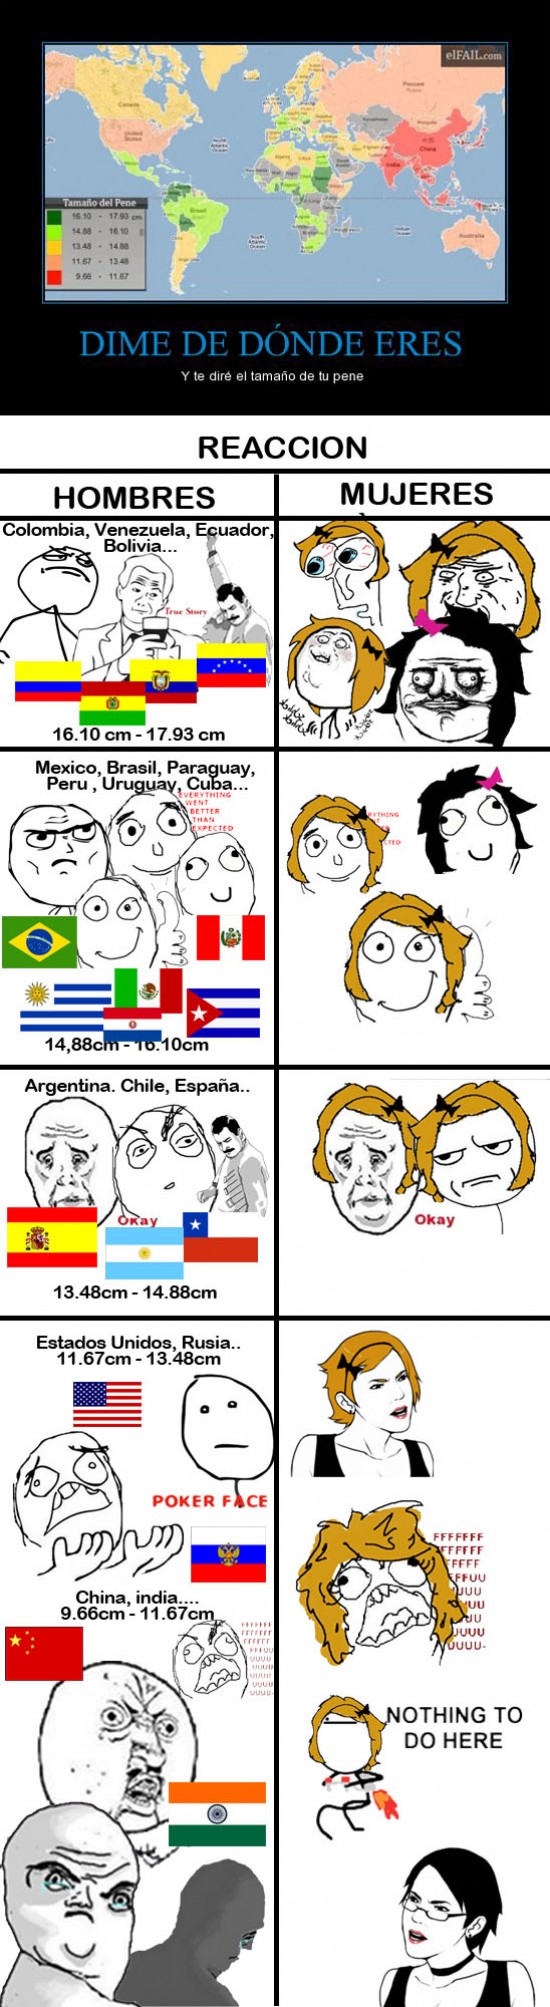 colombia,ecuador,españa,hombres,meme,mother of god,mujeres,reaccion,tamaño,venezuela